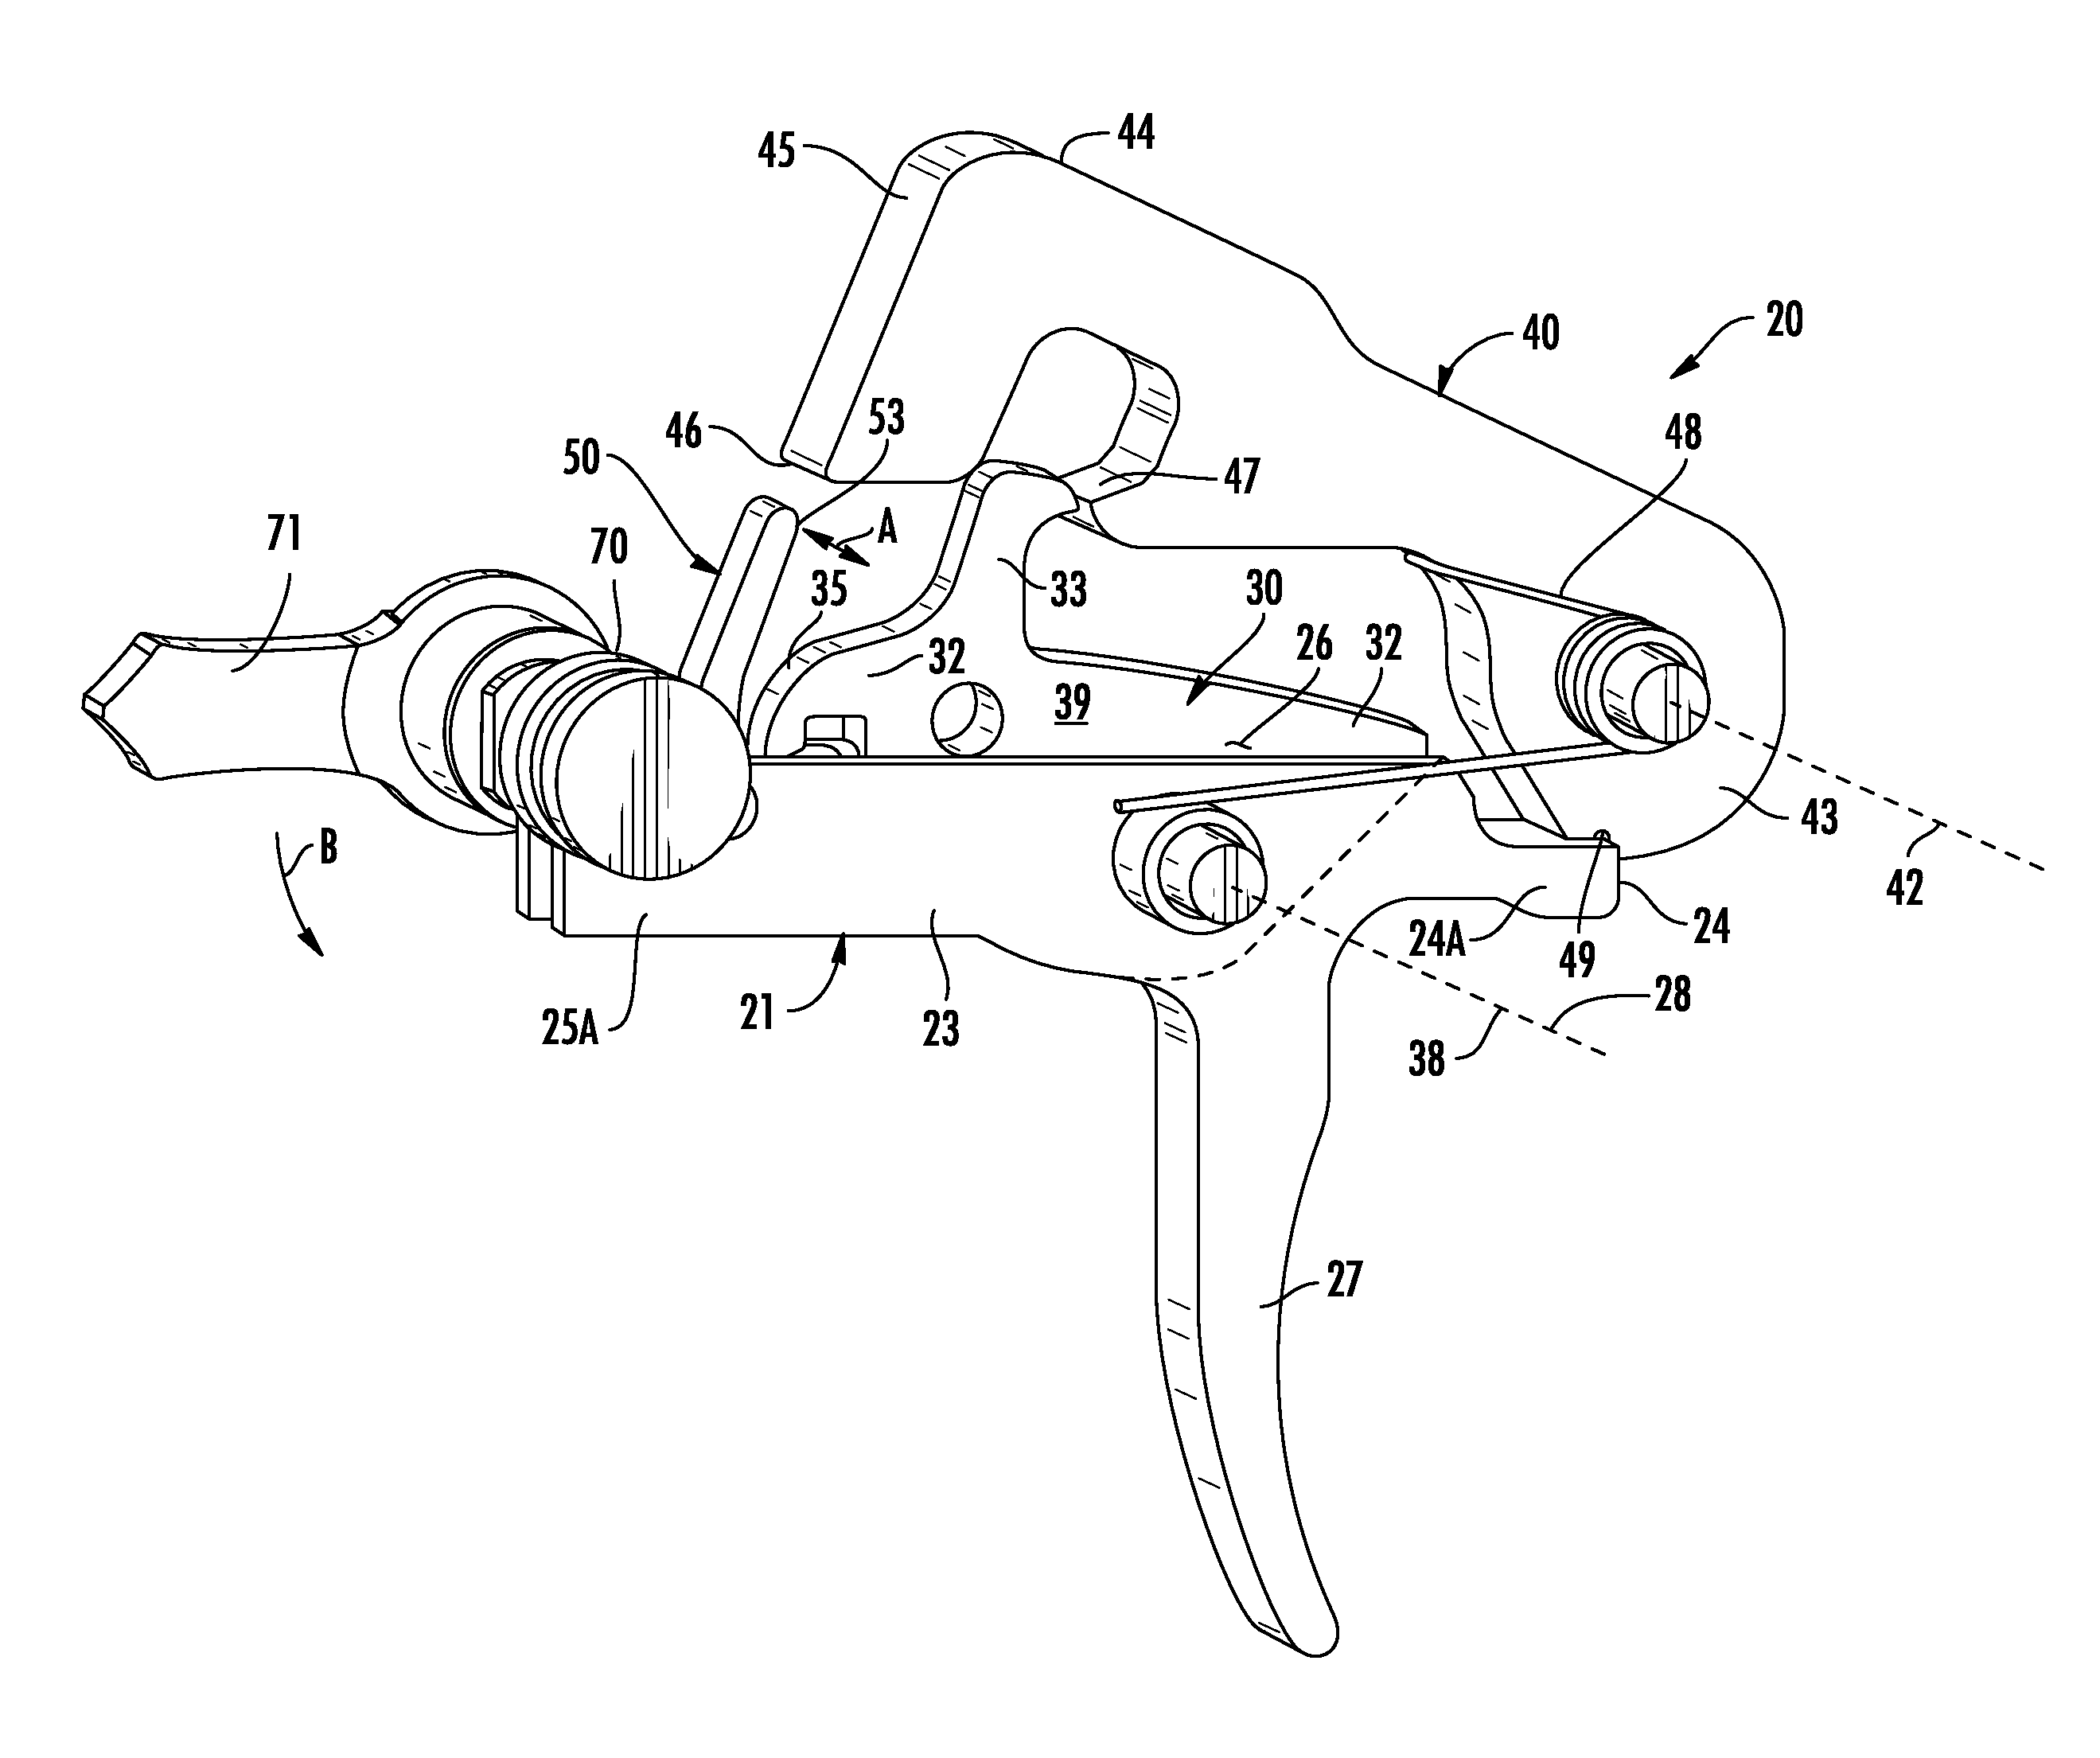 Trigger mechanism